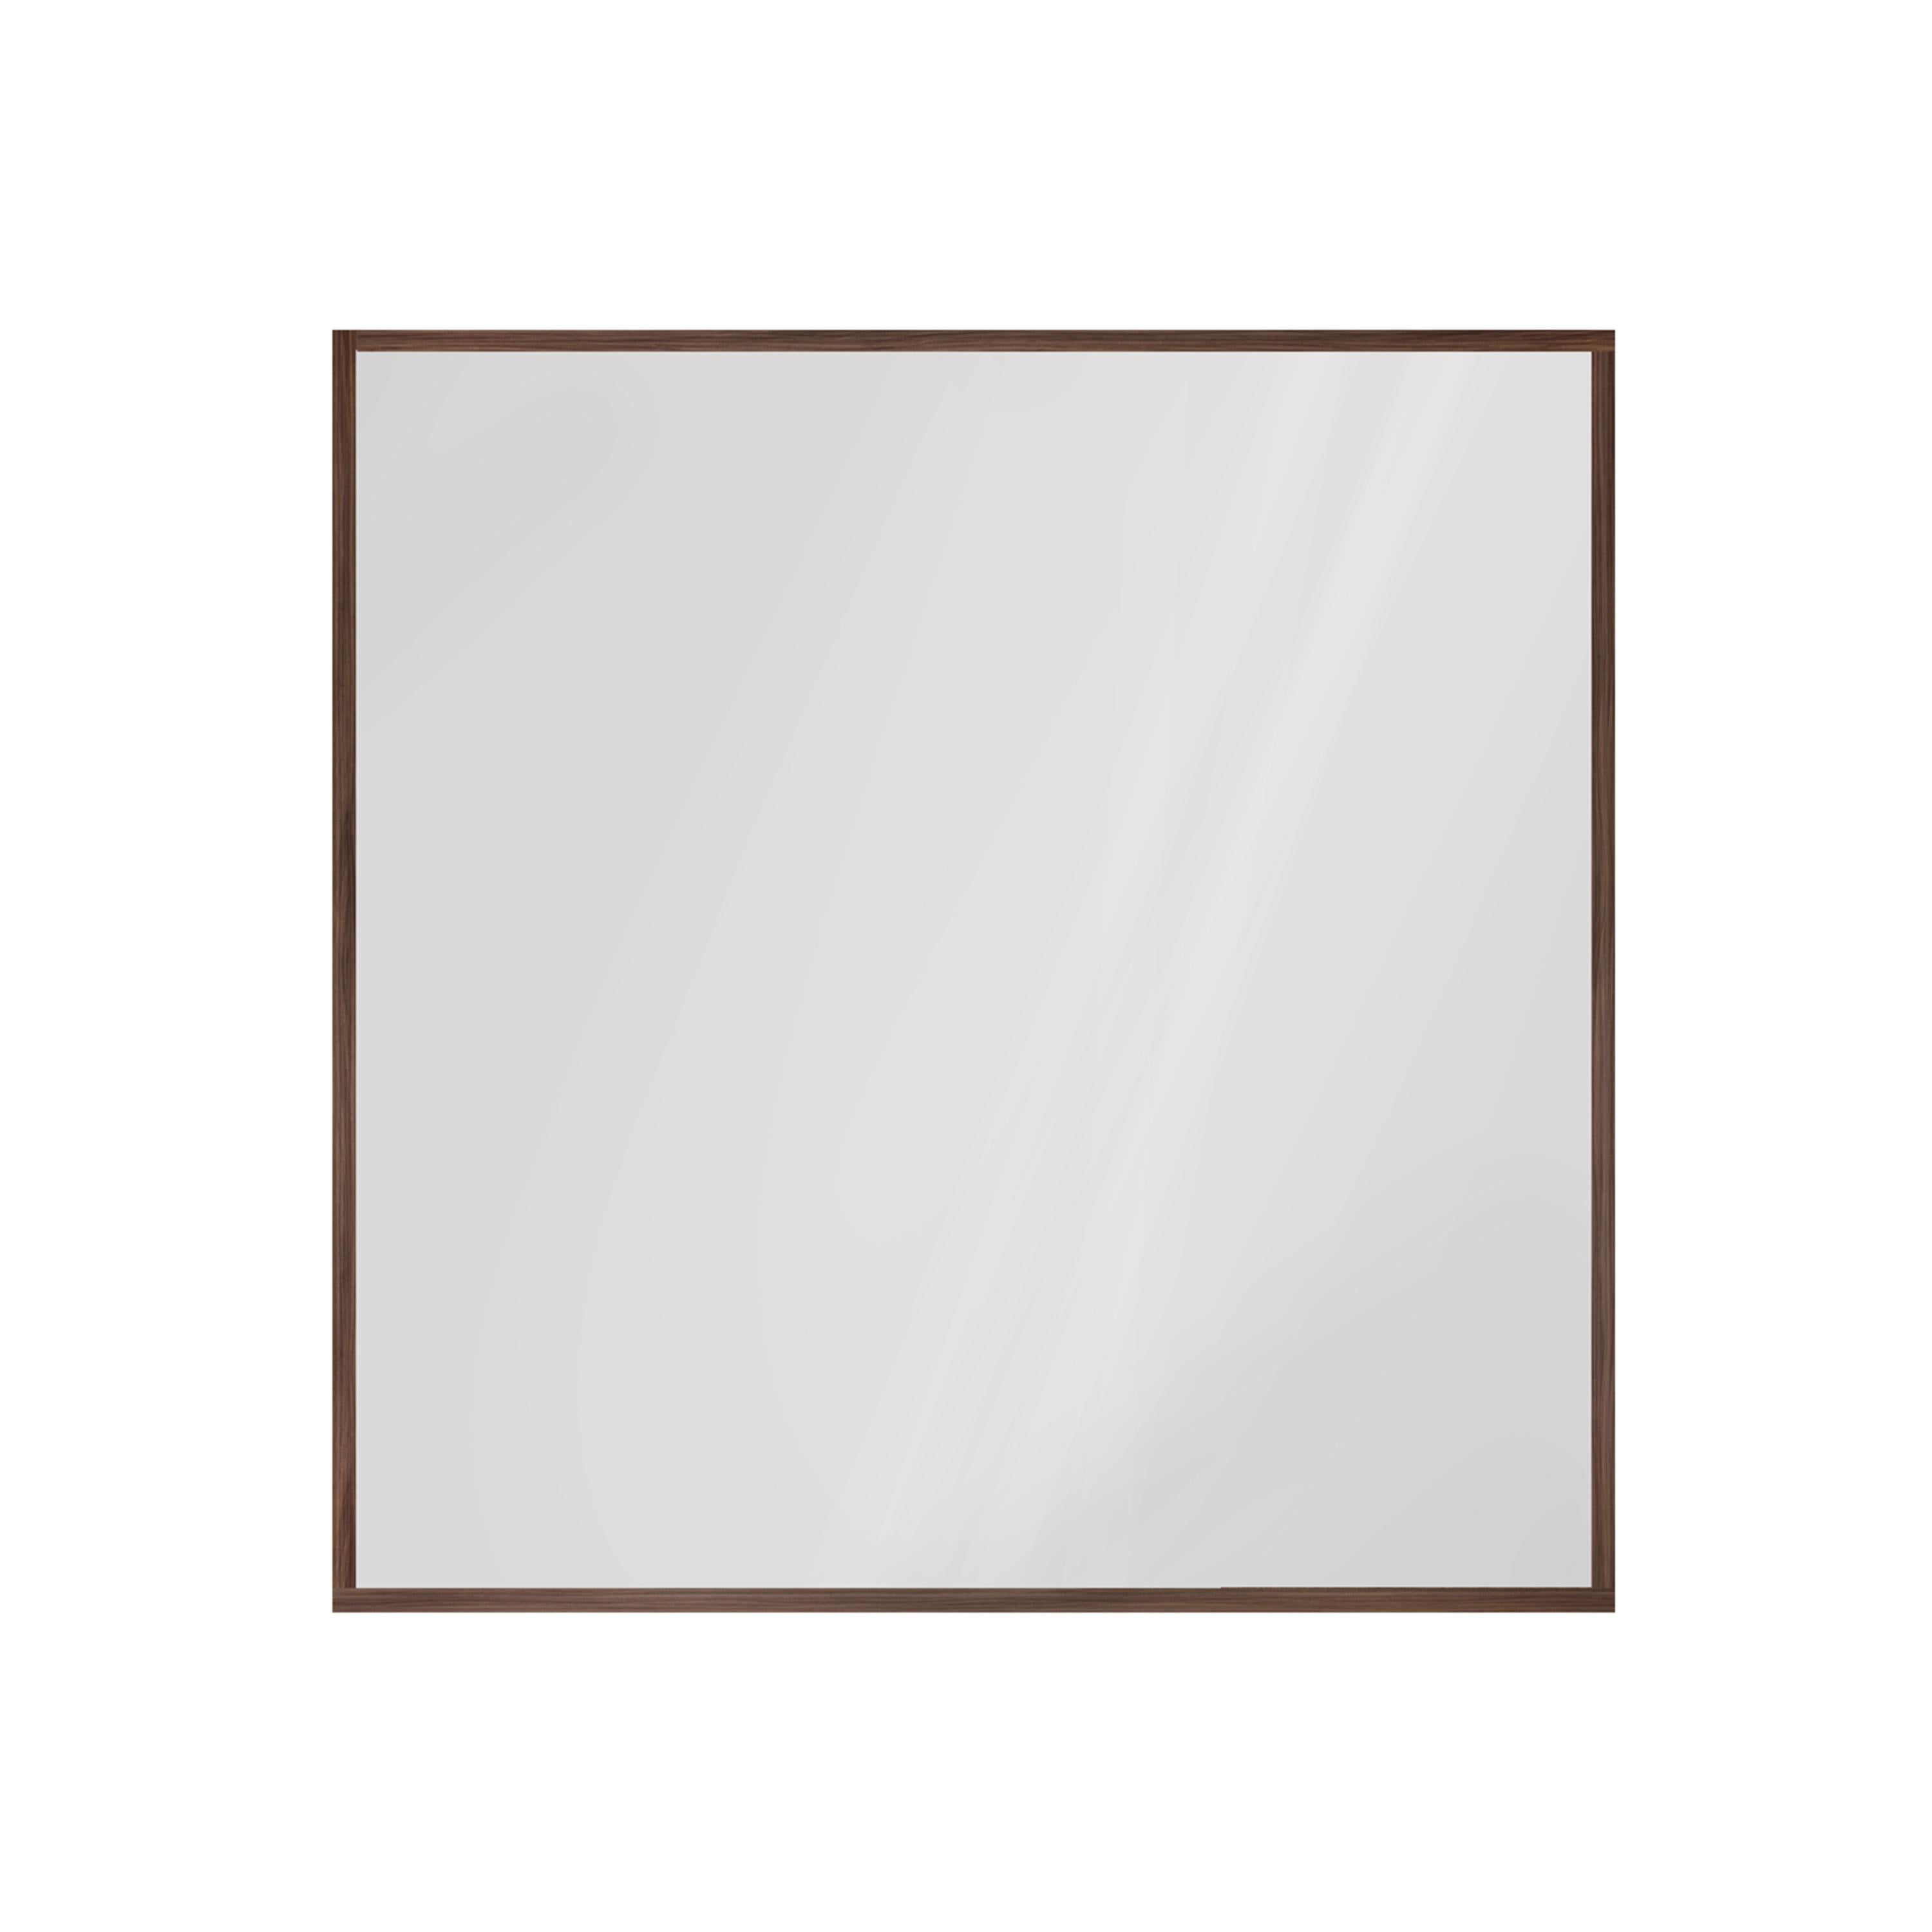 Quadratischer klarer Spiegel mit Rahmen aus Walnussholz.

Wie alle unsere Artikel wird auch dieser Spiegel auf Bestellung gefertigt und ist daher in Größe und Ausführung individuell anpassbar. Die Anpassungsgebühr beträgt nur 10 %, die auf den